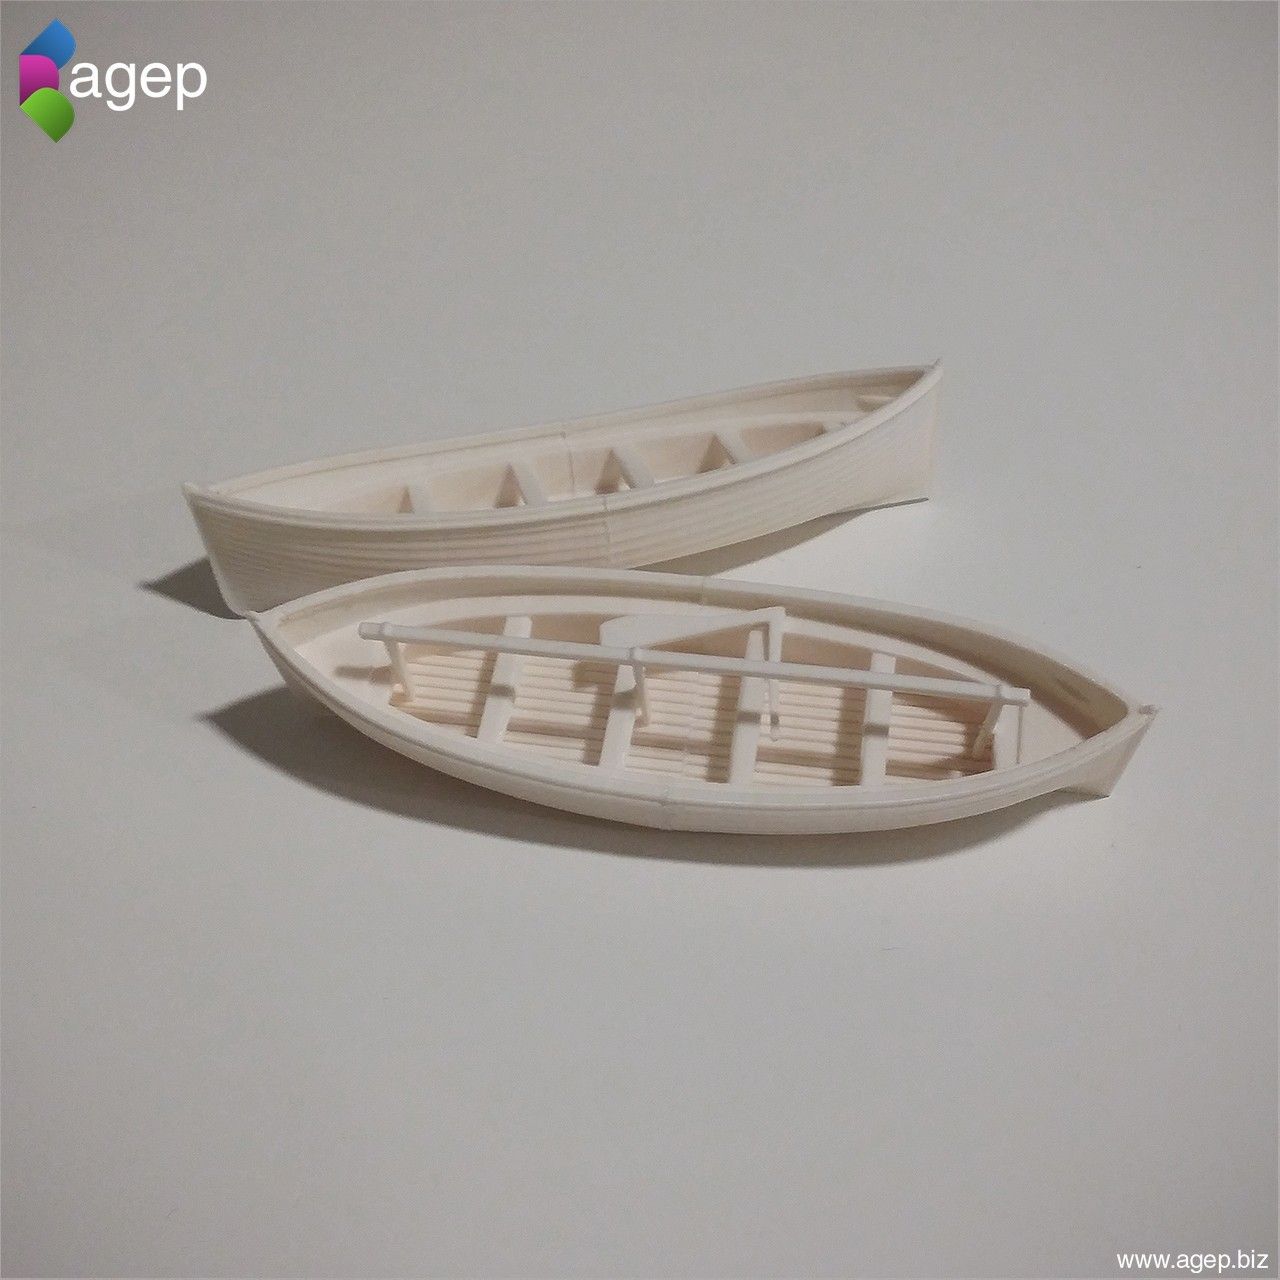 titanic_lifeboat_agepbiz_002.jpg Télécharger fichier STL gratuit Bateaux de sauvetage du RMS Titanic • Design pour impression 3D, agepbiz